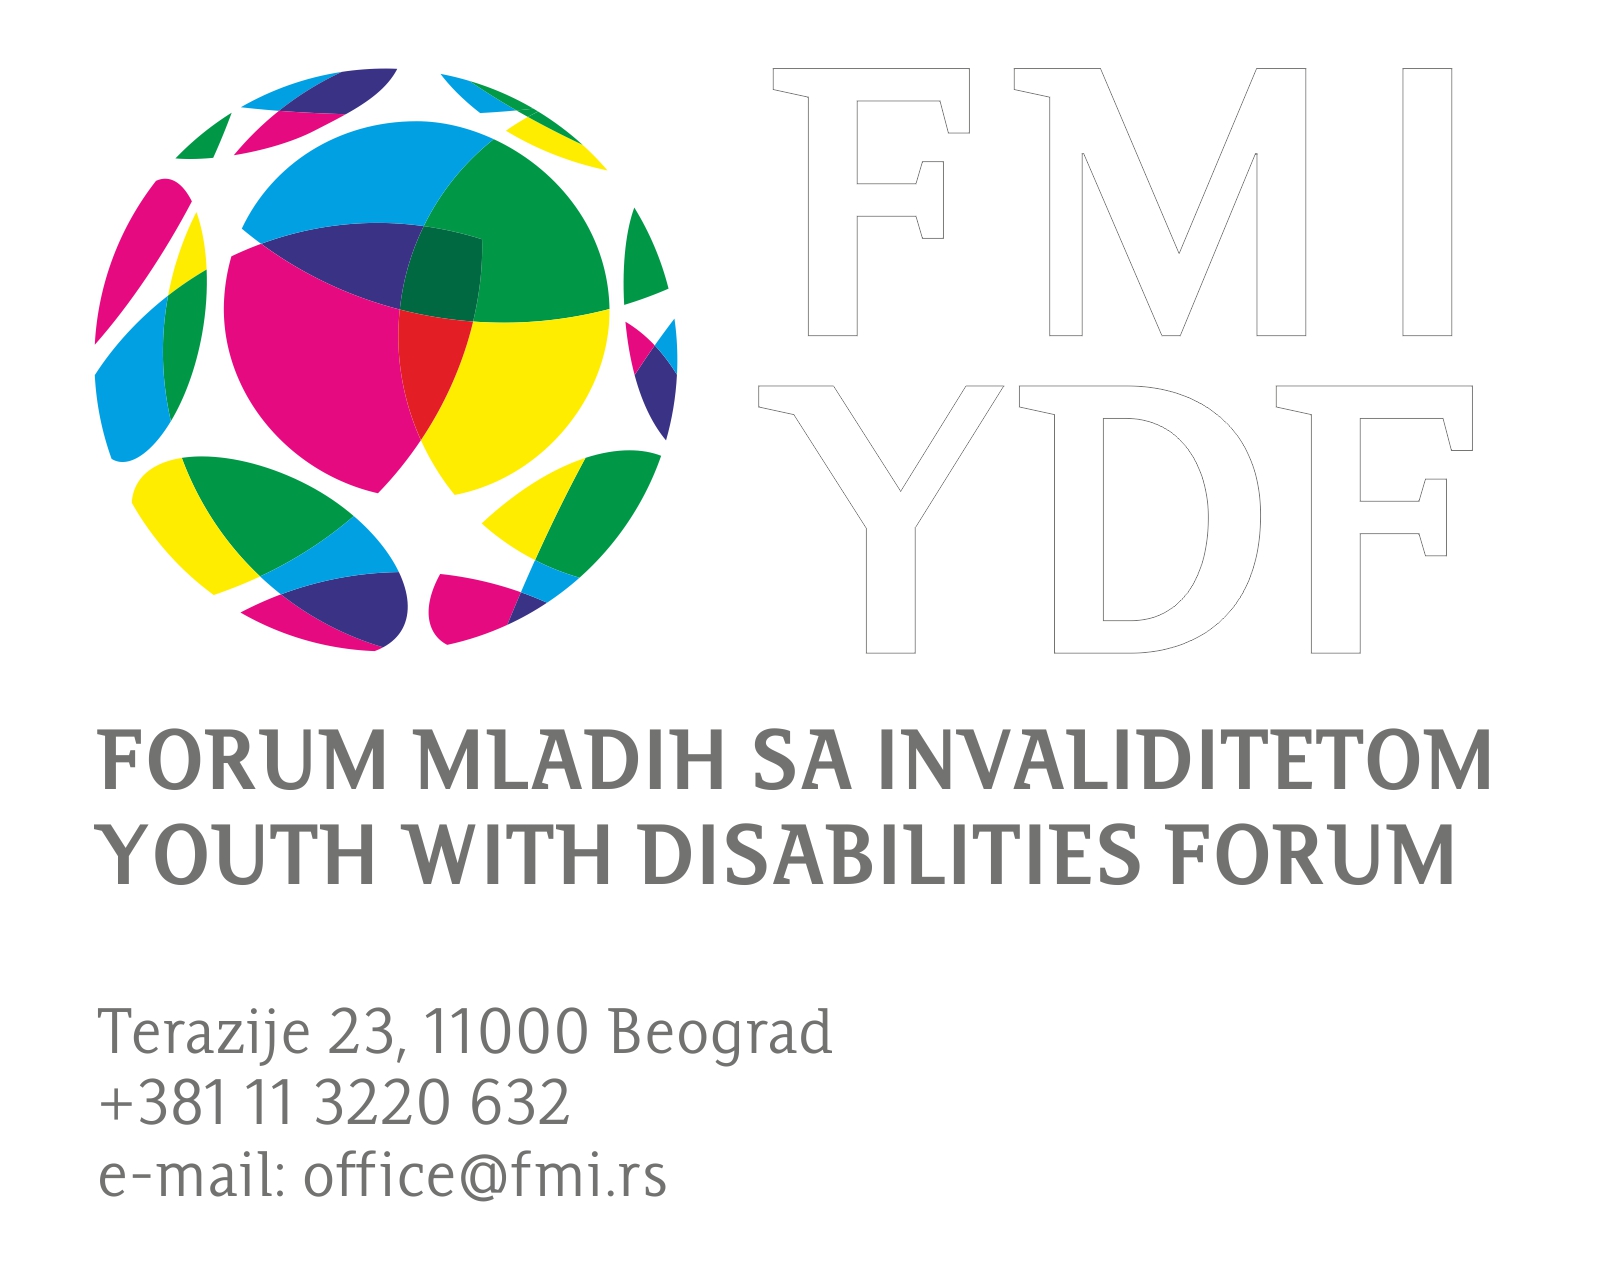 Usluge Udruženja Forum mladih sa invaliditetom: Podrška osobama s invaliditetom u procesu zapošljavanja